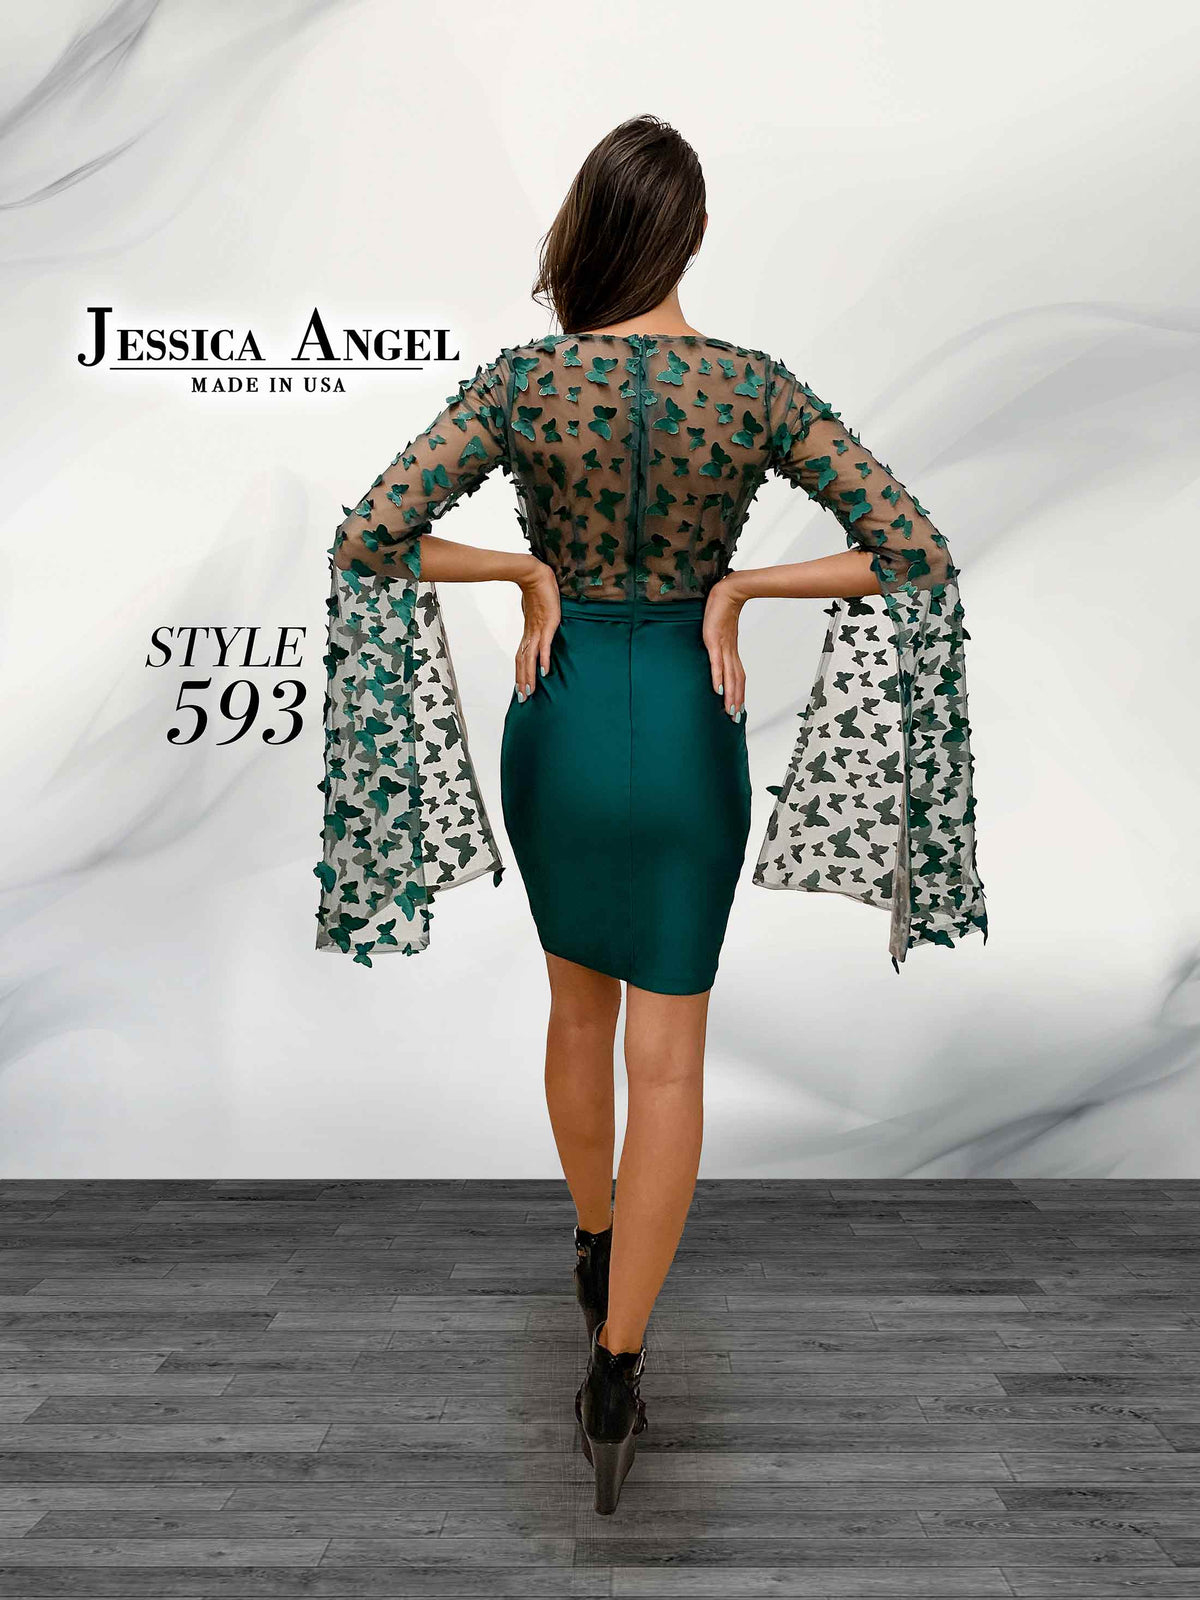 Jessica Angel 593